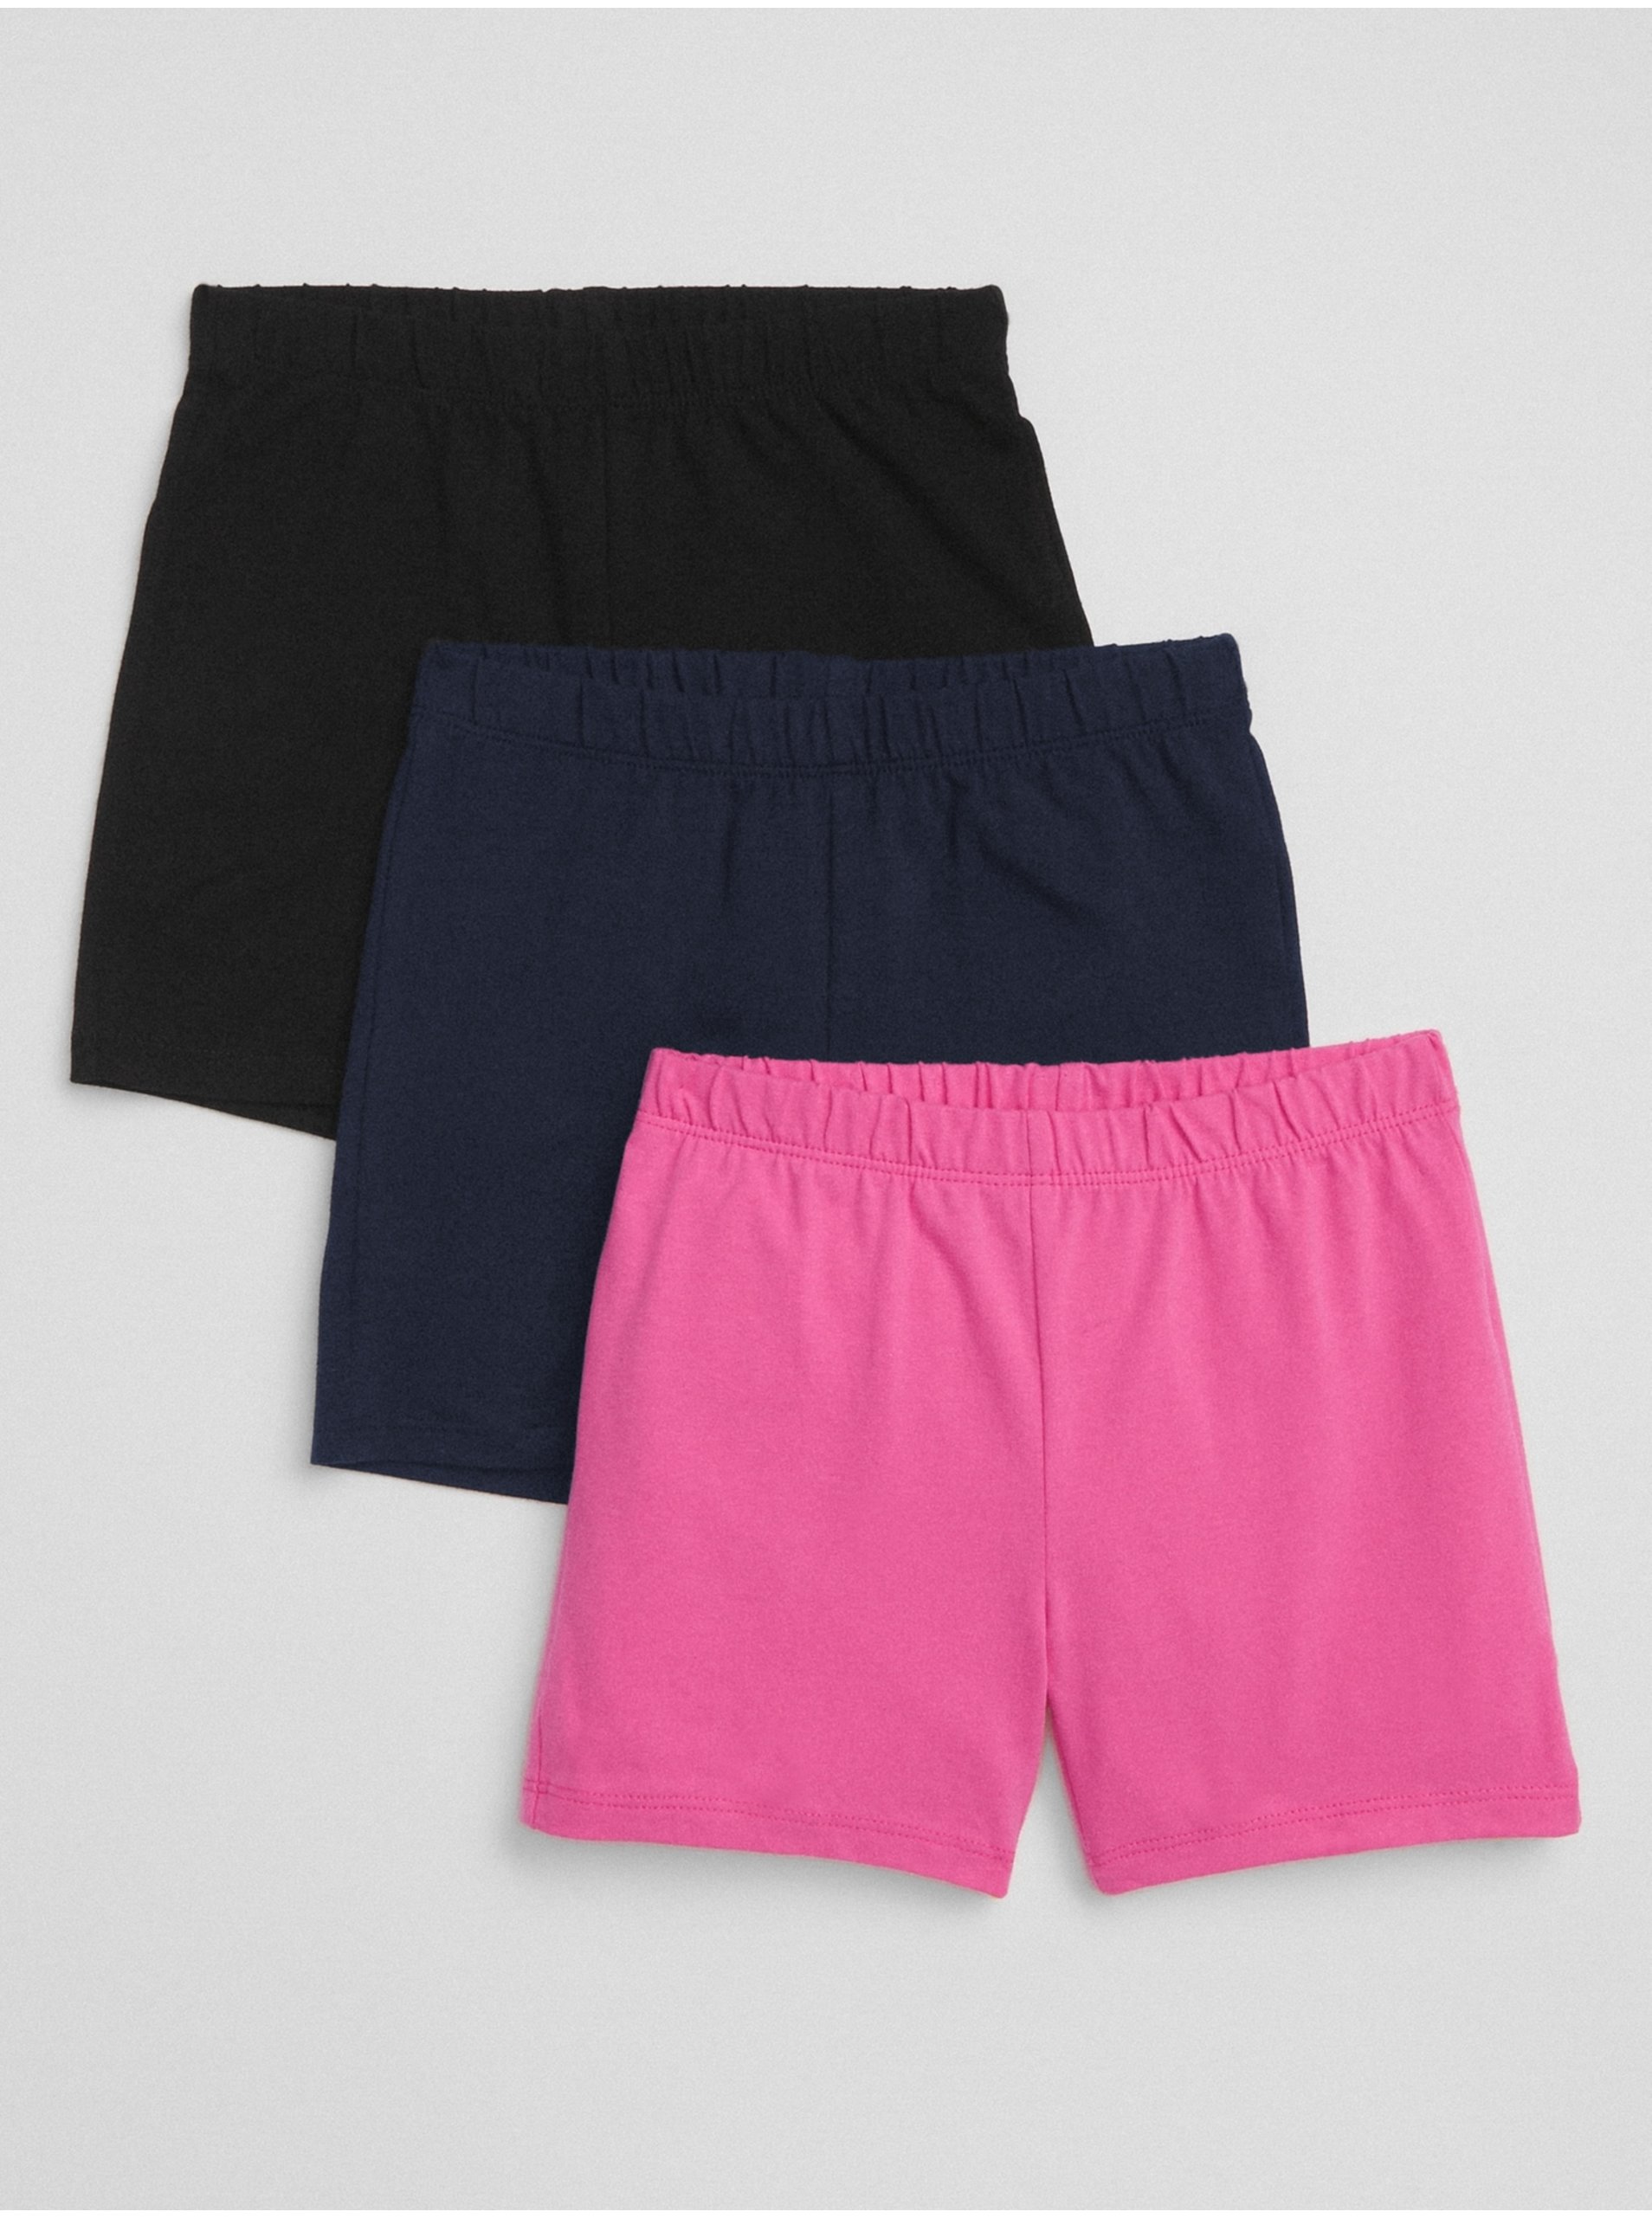 E-shop Barevné holčičí dětské kraťasy cartwheel shorts in stretch jersey, 3ks